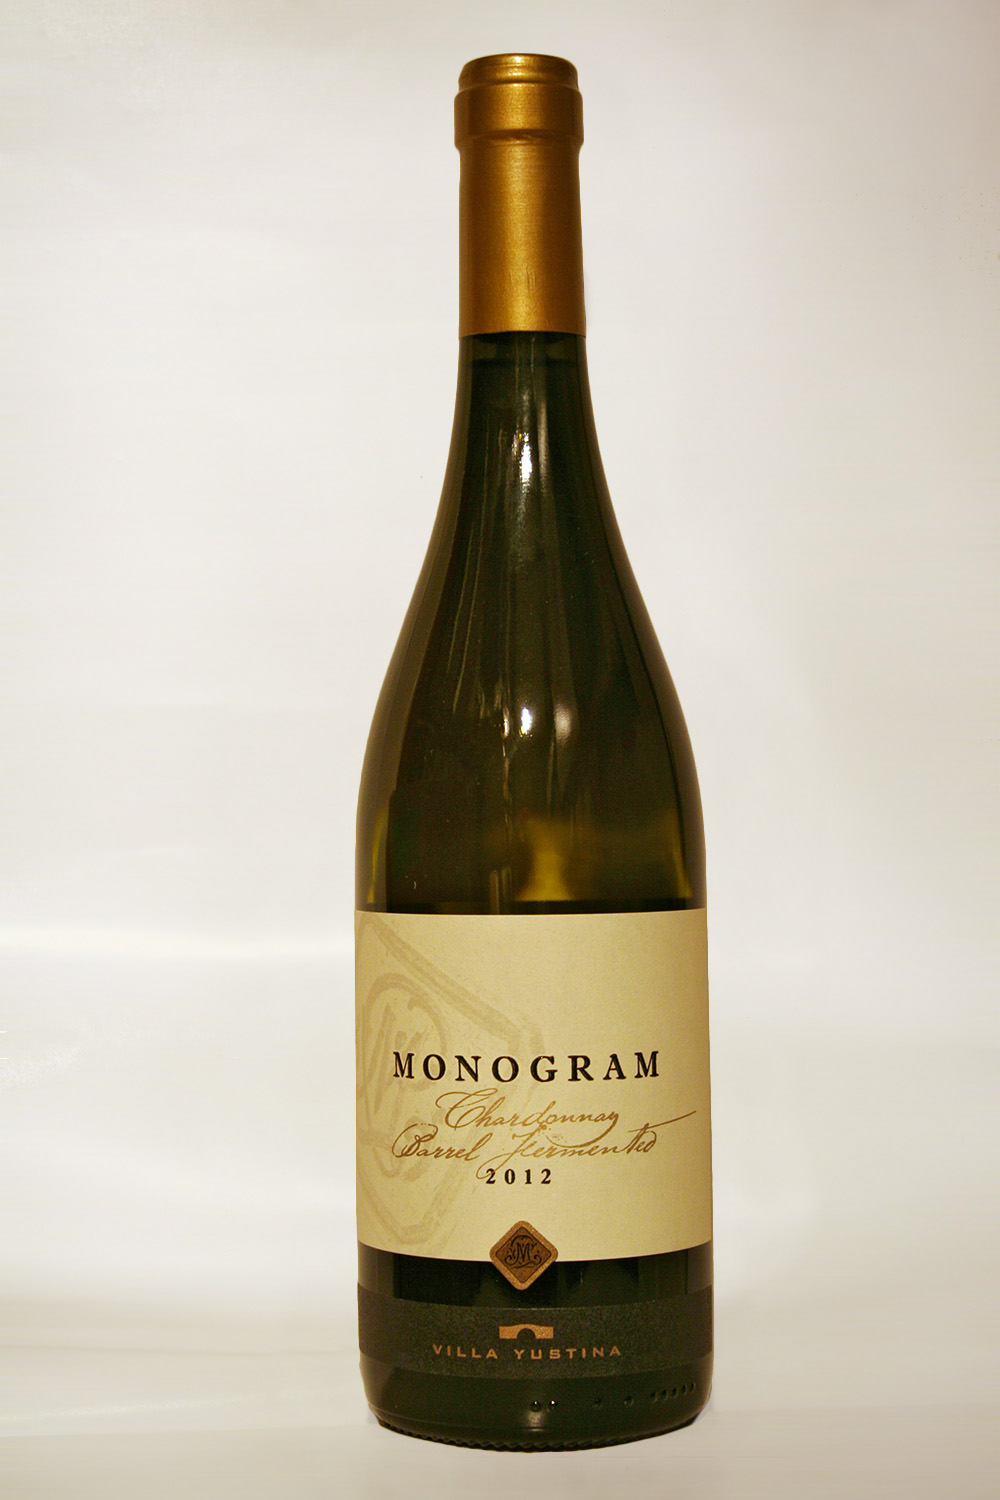 Monogram Chardonnay Barrel Fermented 2012